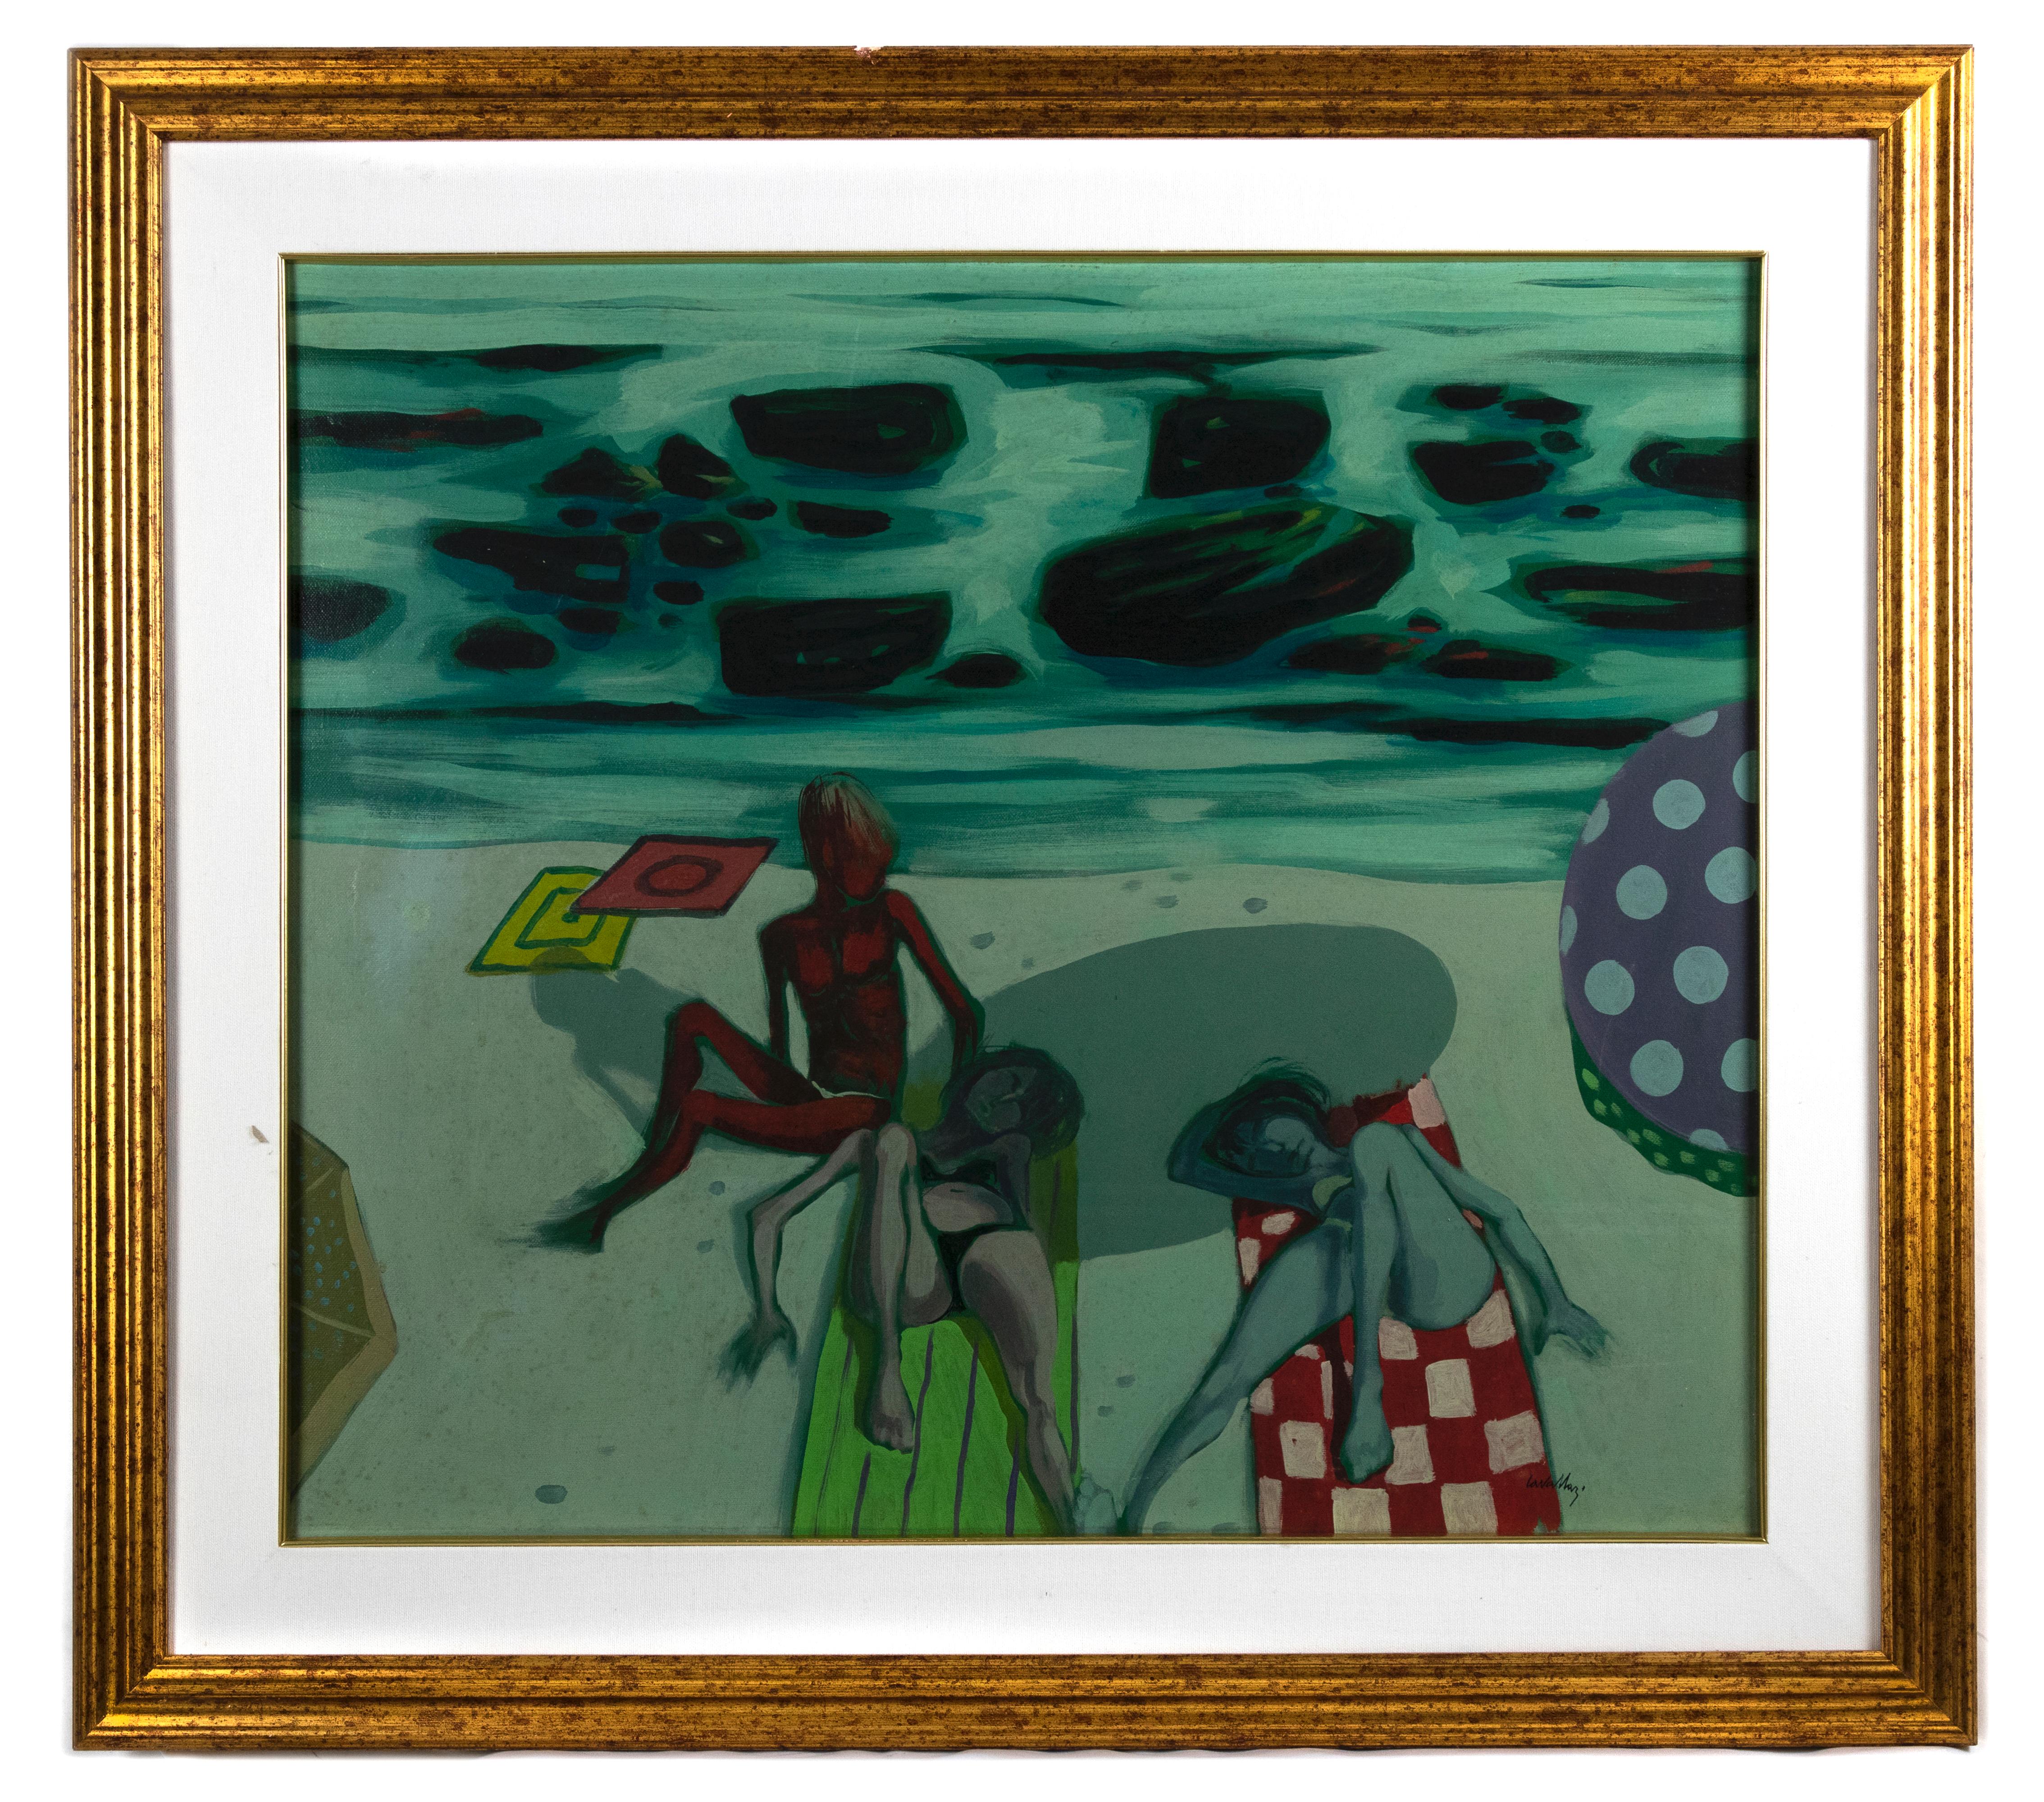 Figures on the Beach - Oil on Canvas by Alberto Cavallari - 1960s